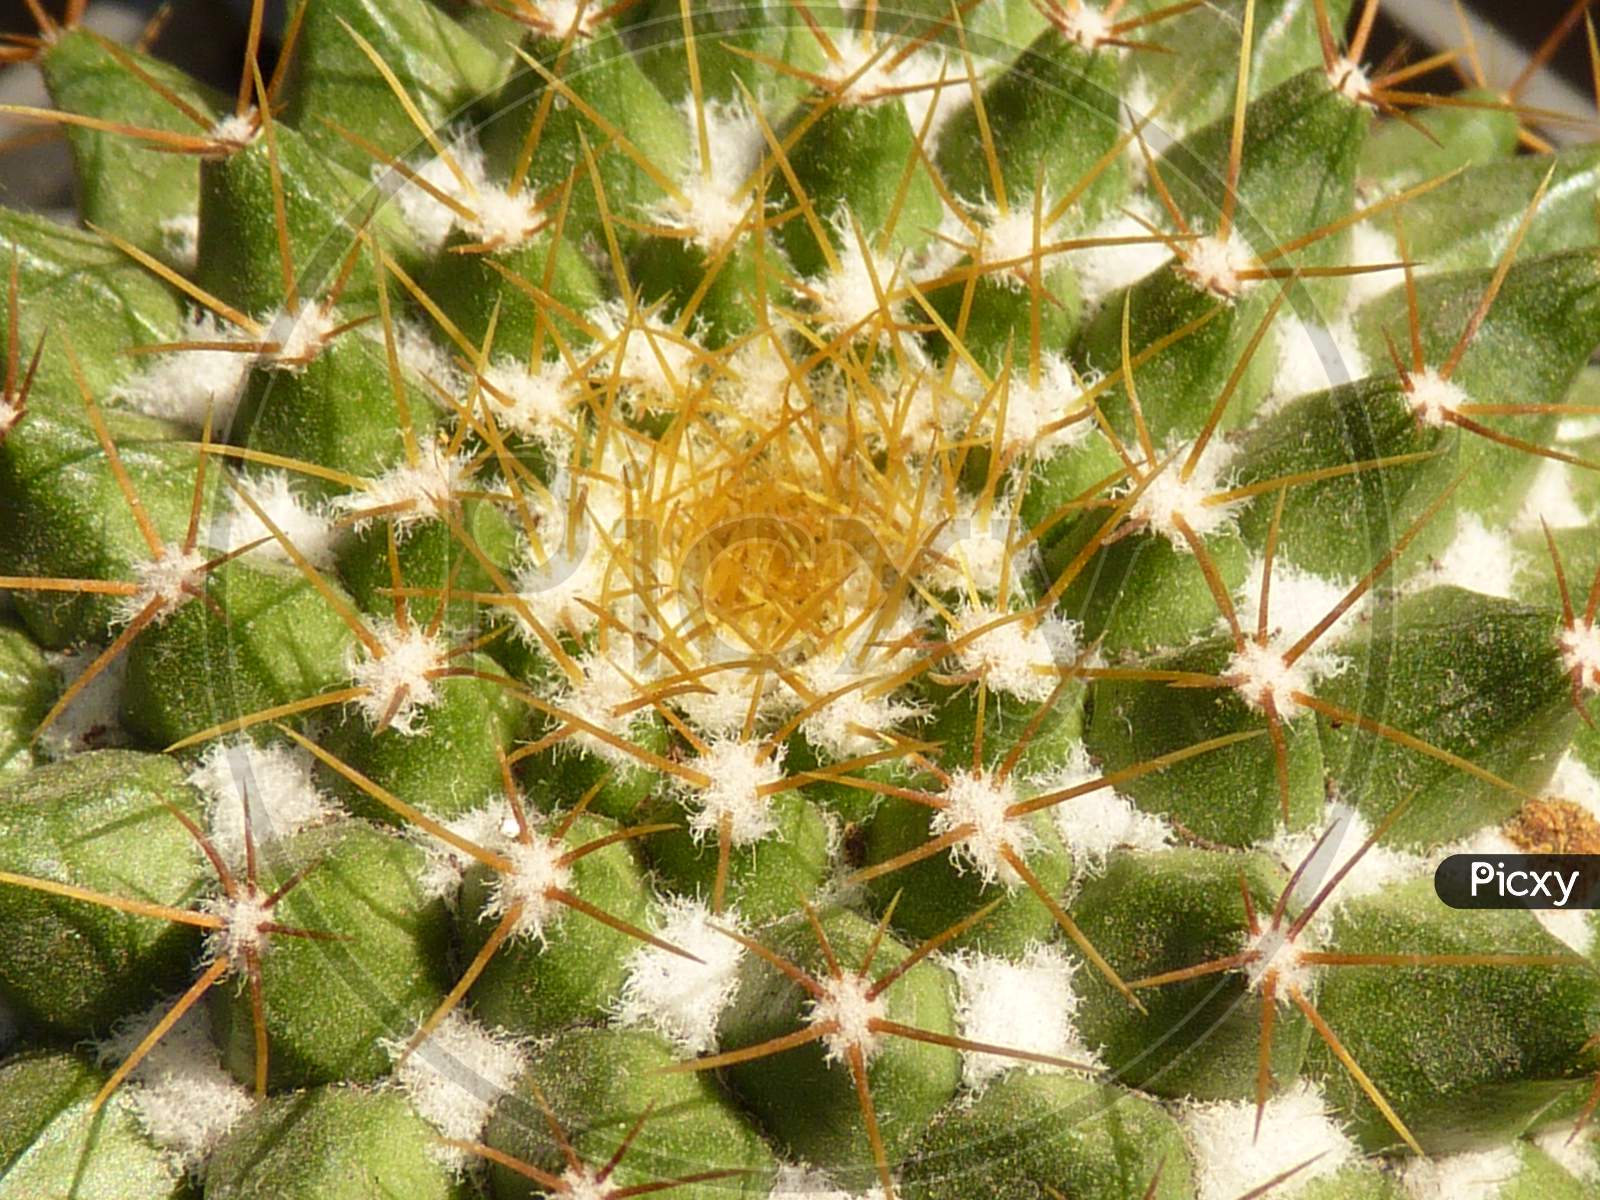 Cactus and Succulent